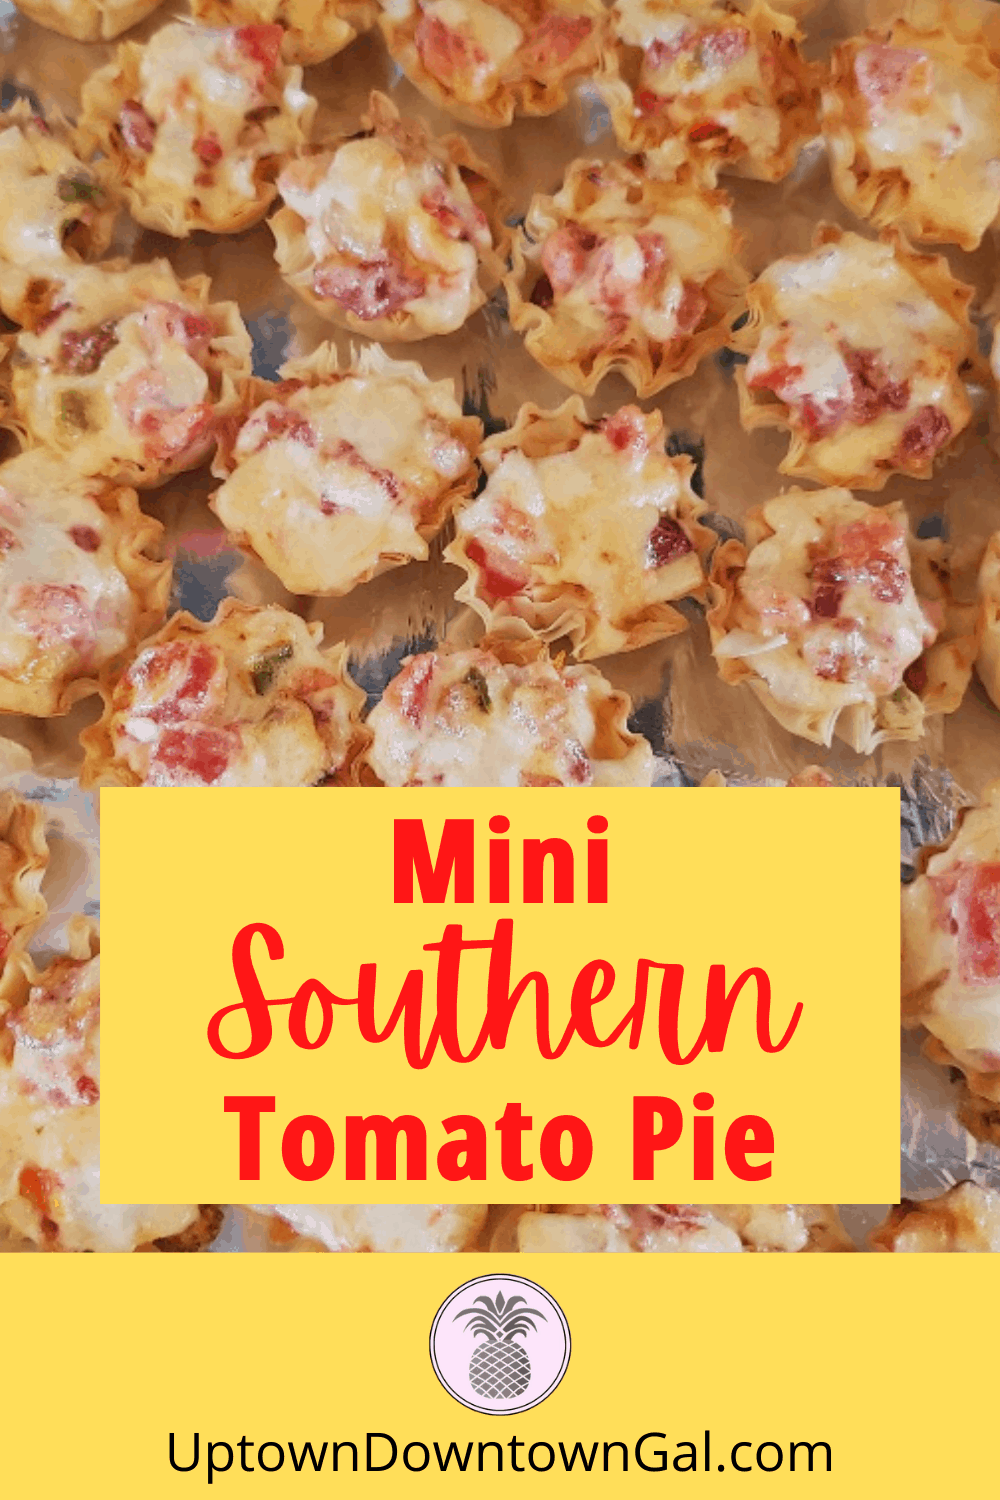 Mini Southern Tomato Pie - 1